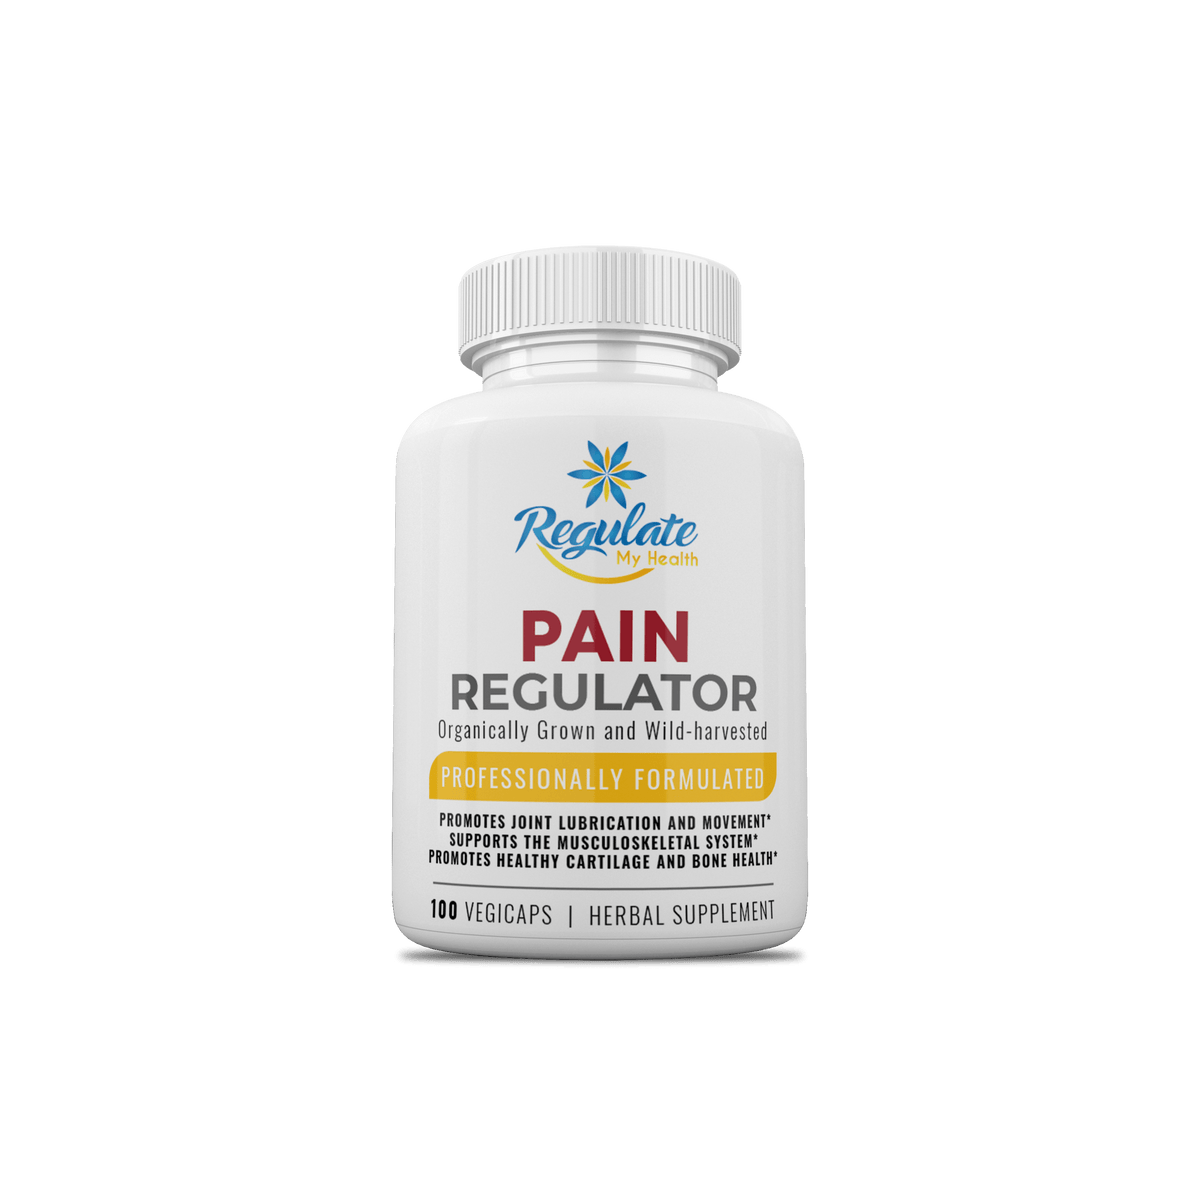 Pain Regulator